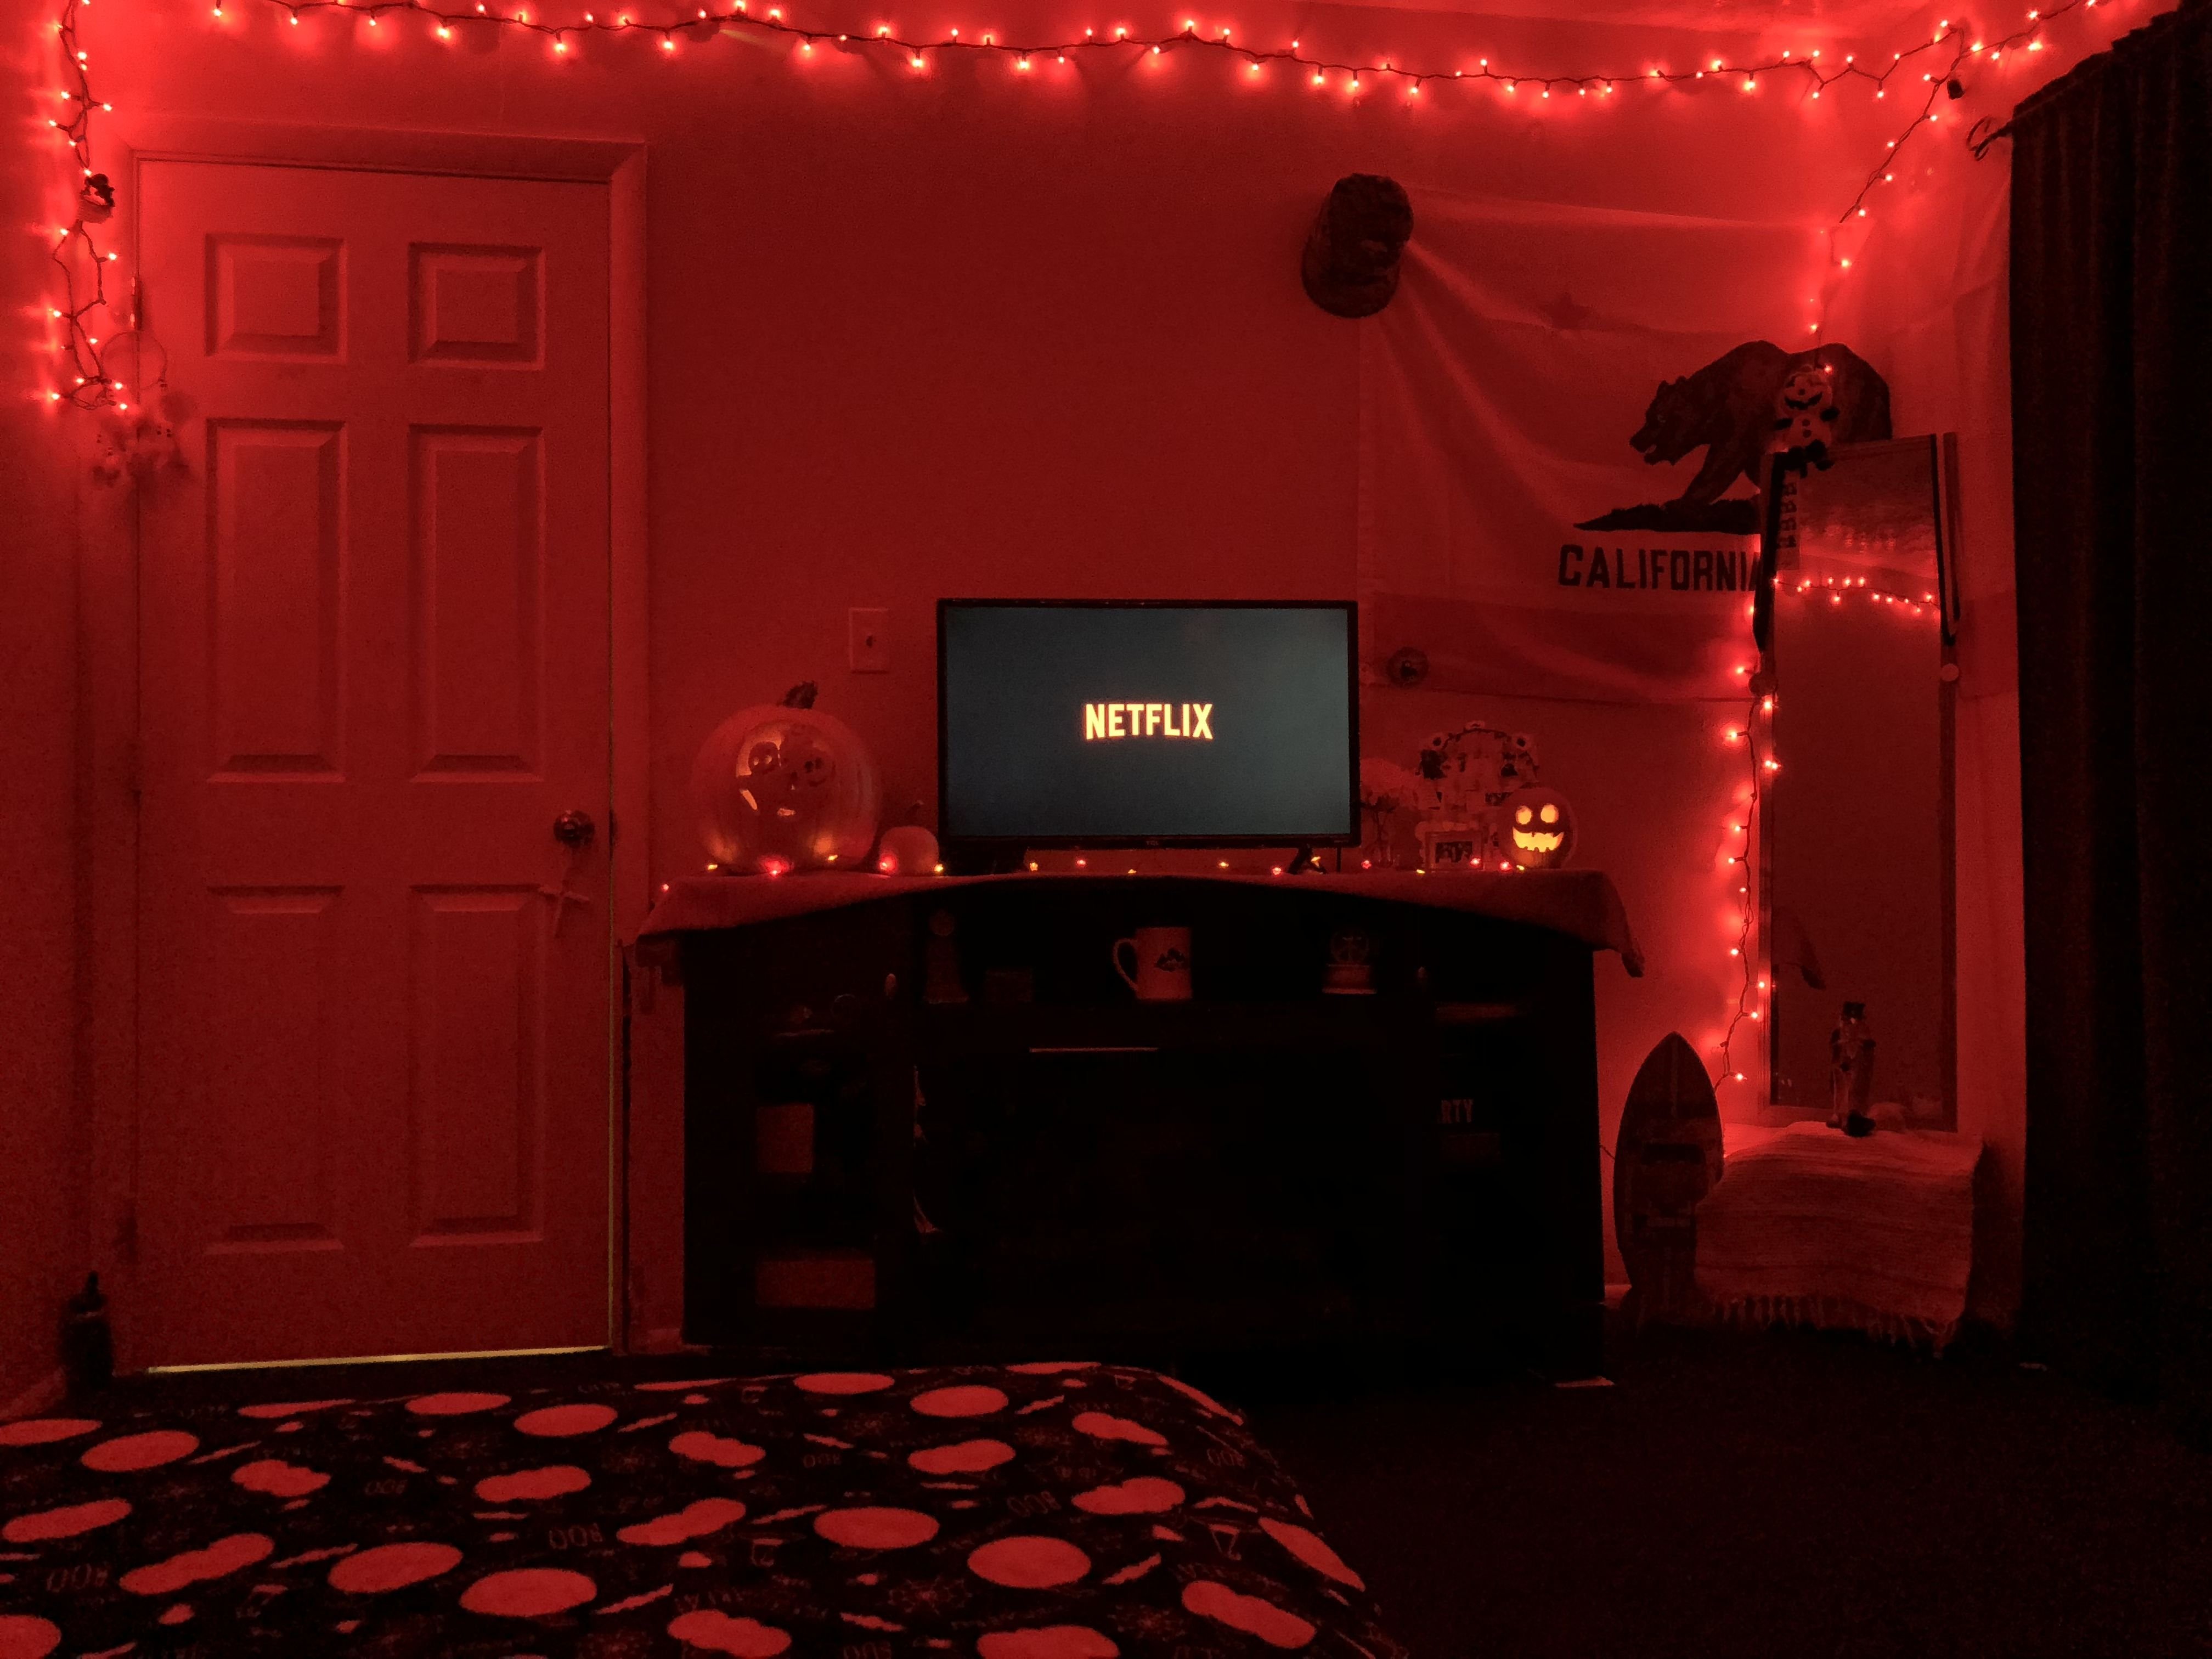 Red Room" красная комната  (1999) ужасы ". Уютная комната с красной подсветкой. Комната в Красном неоне. Комната с красной подсветкой. Красная комн